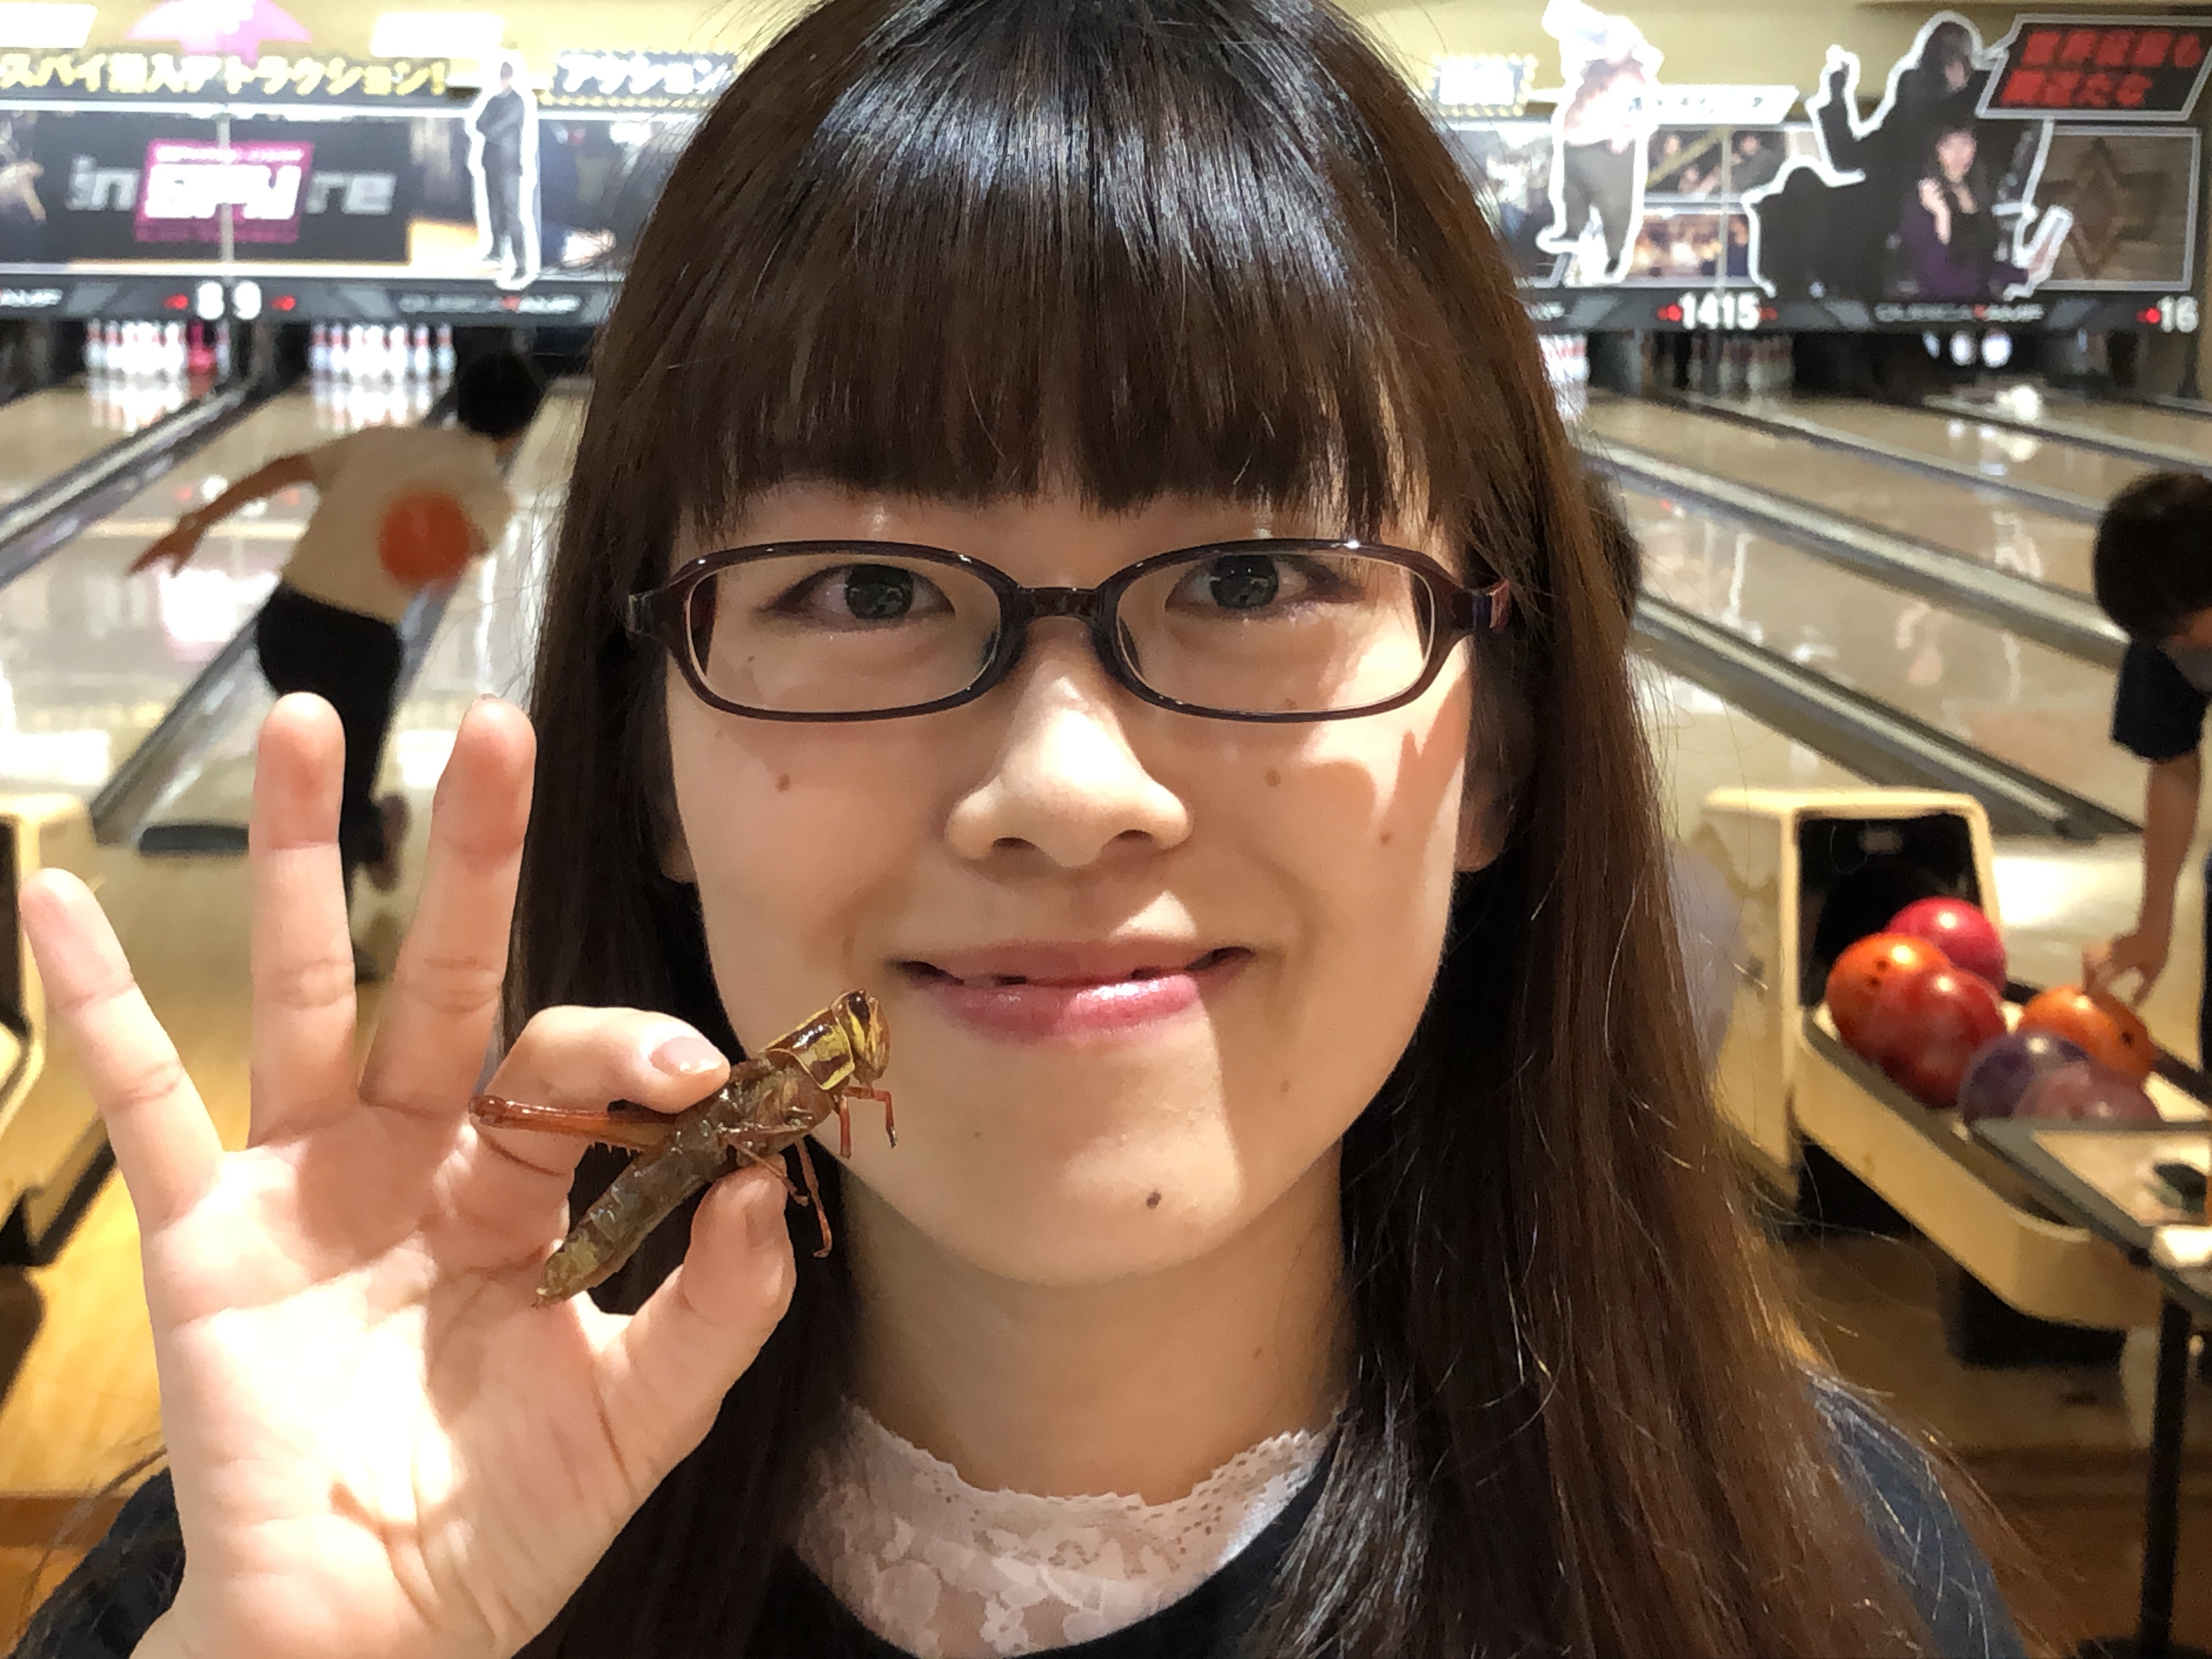 虫 が人気 巨大イナゴを塩味で 新宿 歌舞伎町のボウリング場で発売以降なんと売上2 5倍に 株式会社ヒューマックスエンタテイメントのプレスリリース